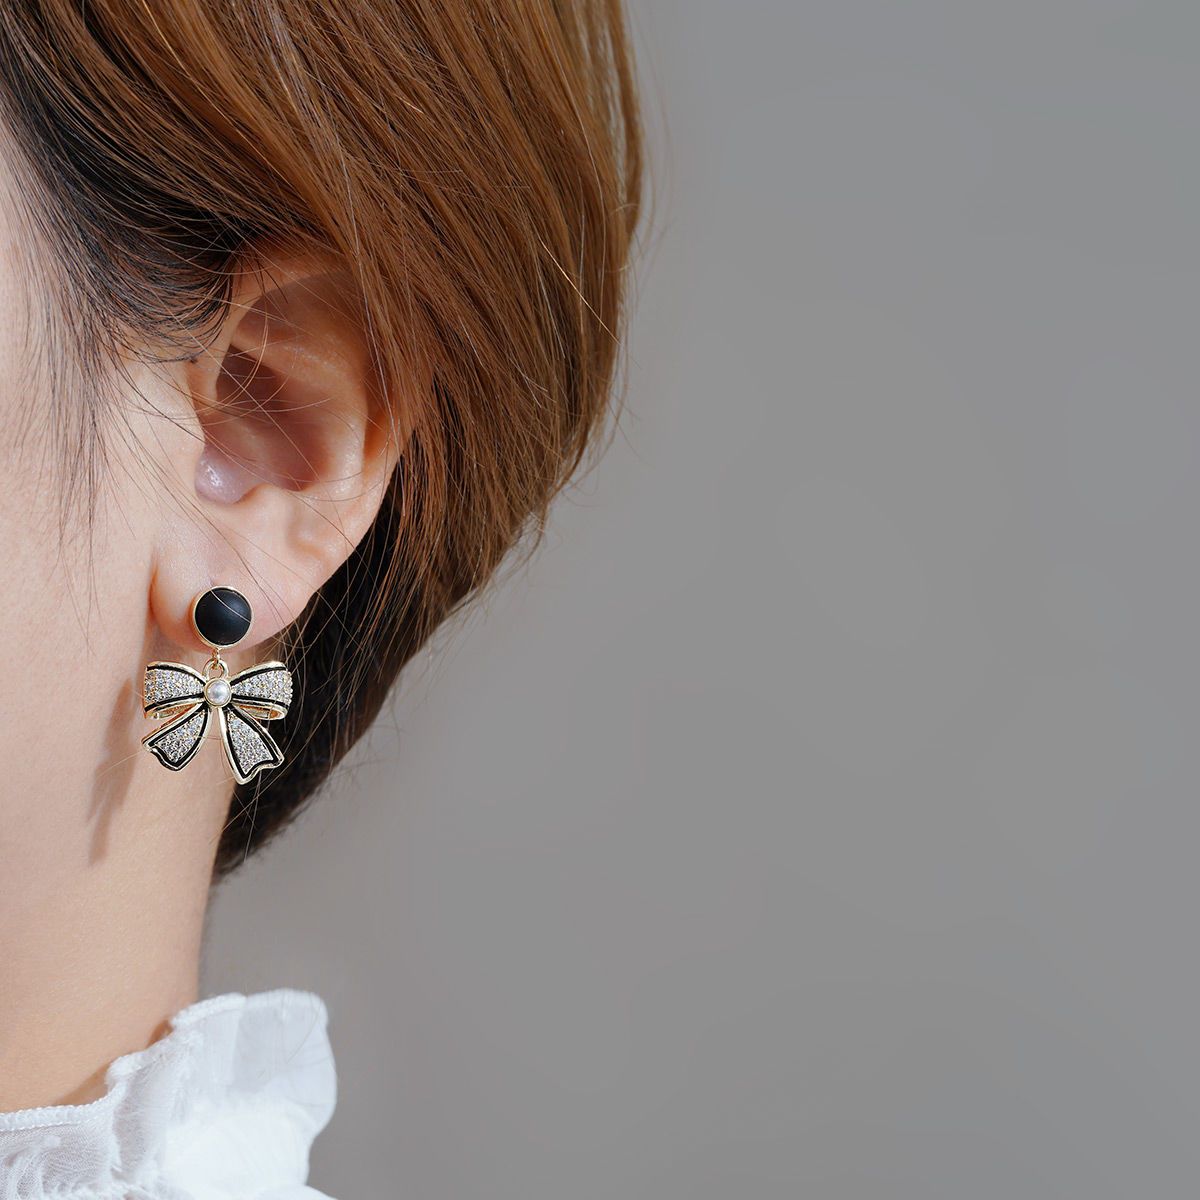 Black Bow Stud Earrings Special Design Sense Hong Kong Style Earrings Advanced Niche Earrings French Hepburn Style Earrings for Women